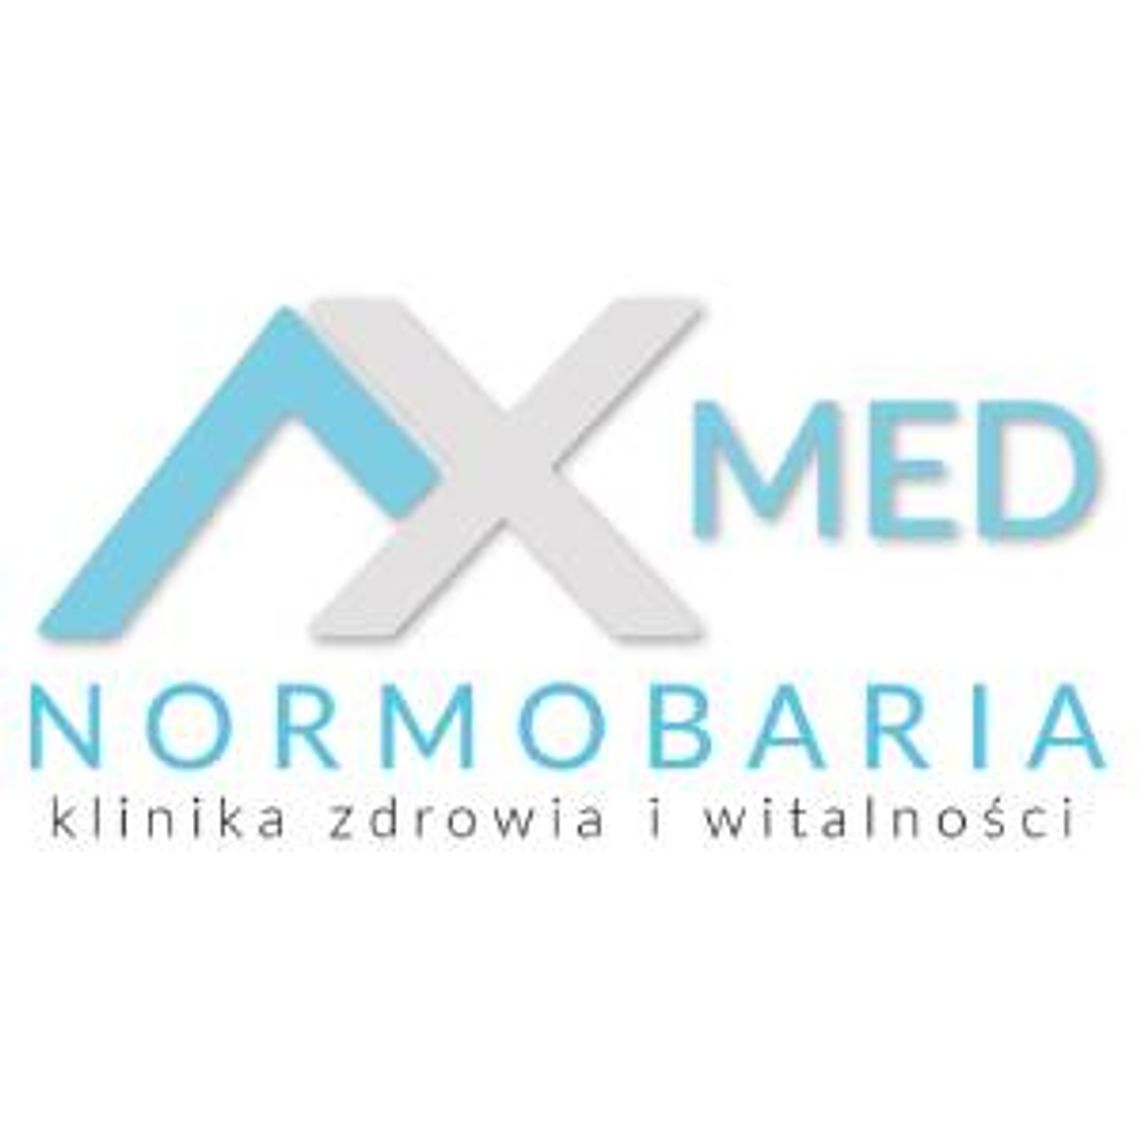 Przeciwwskazania terapii normobarycznej - AX MED Normobaria